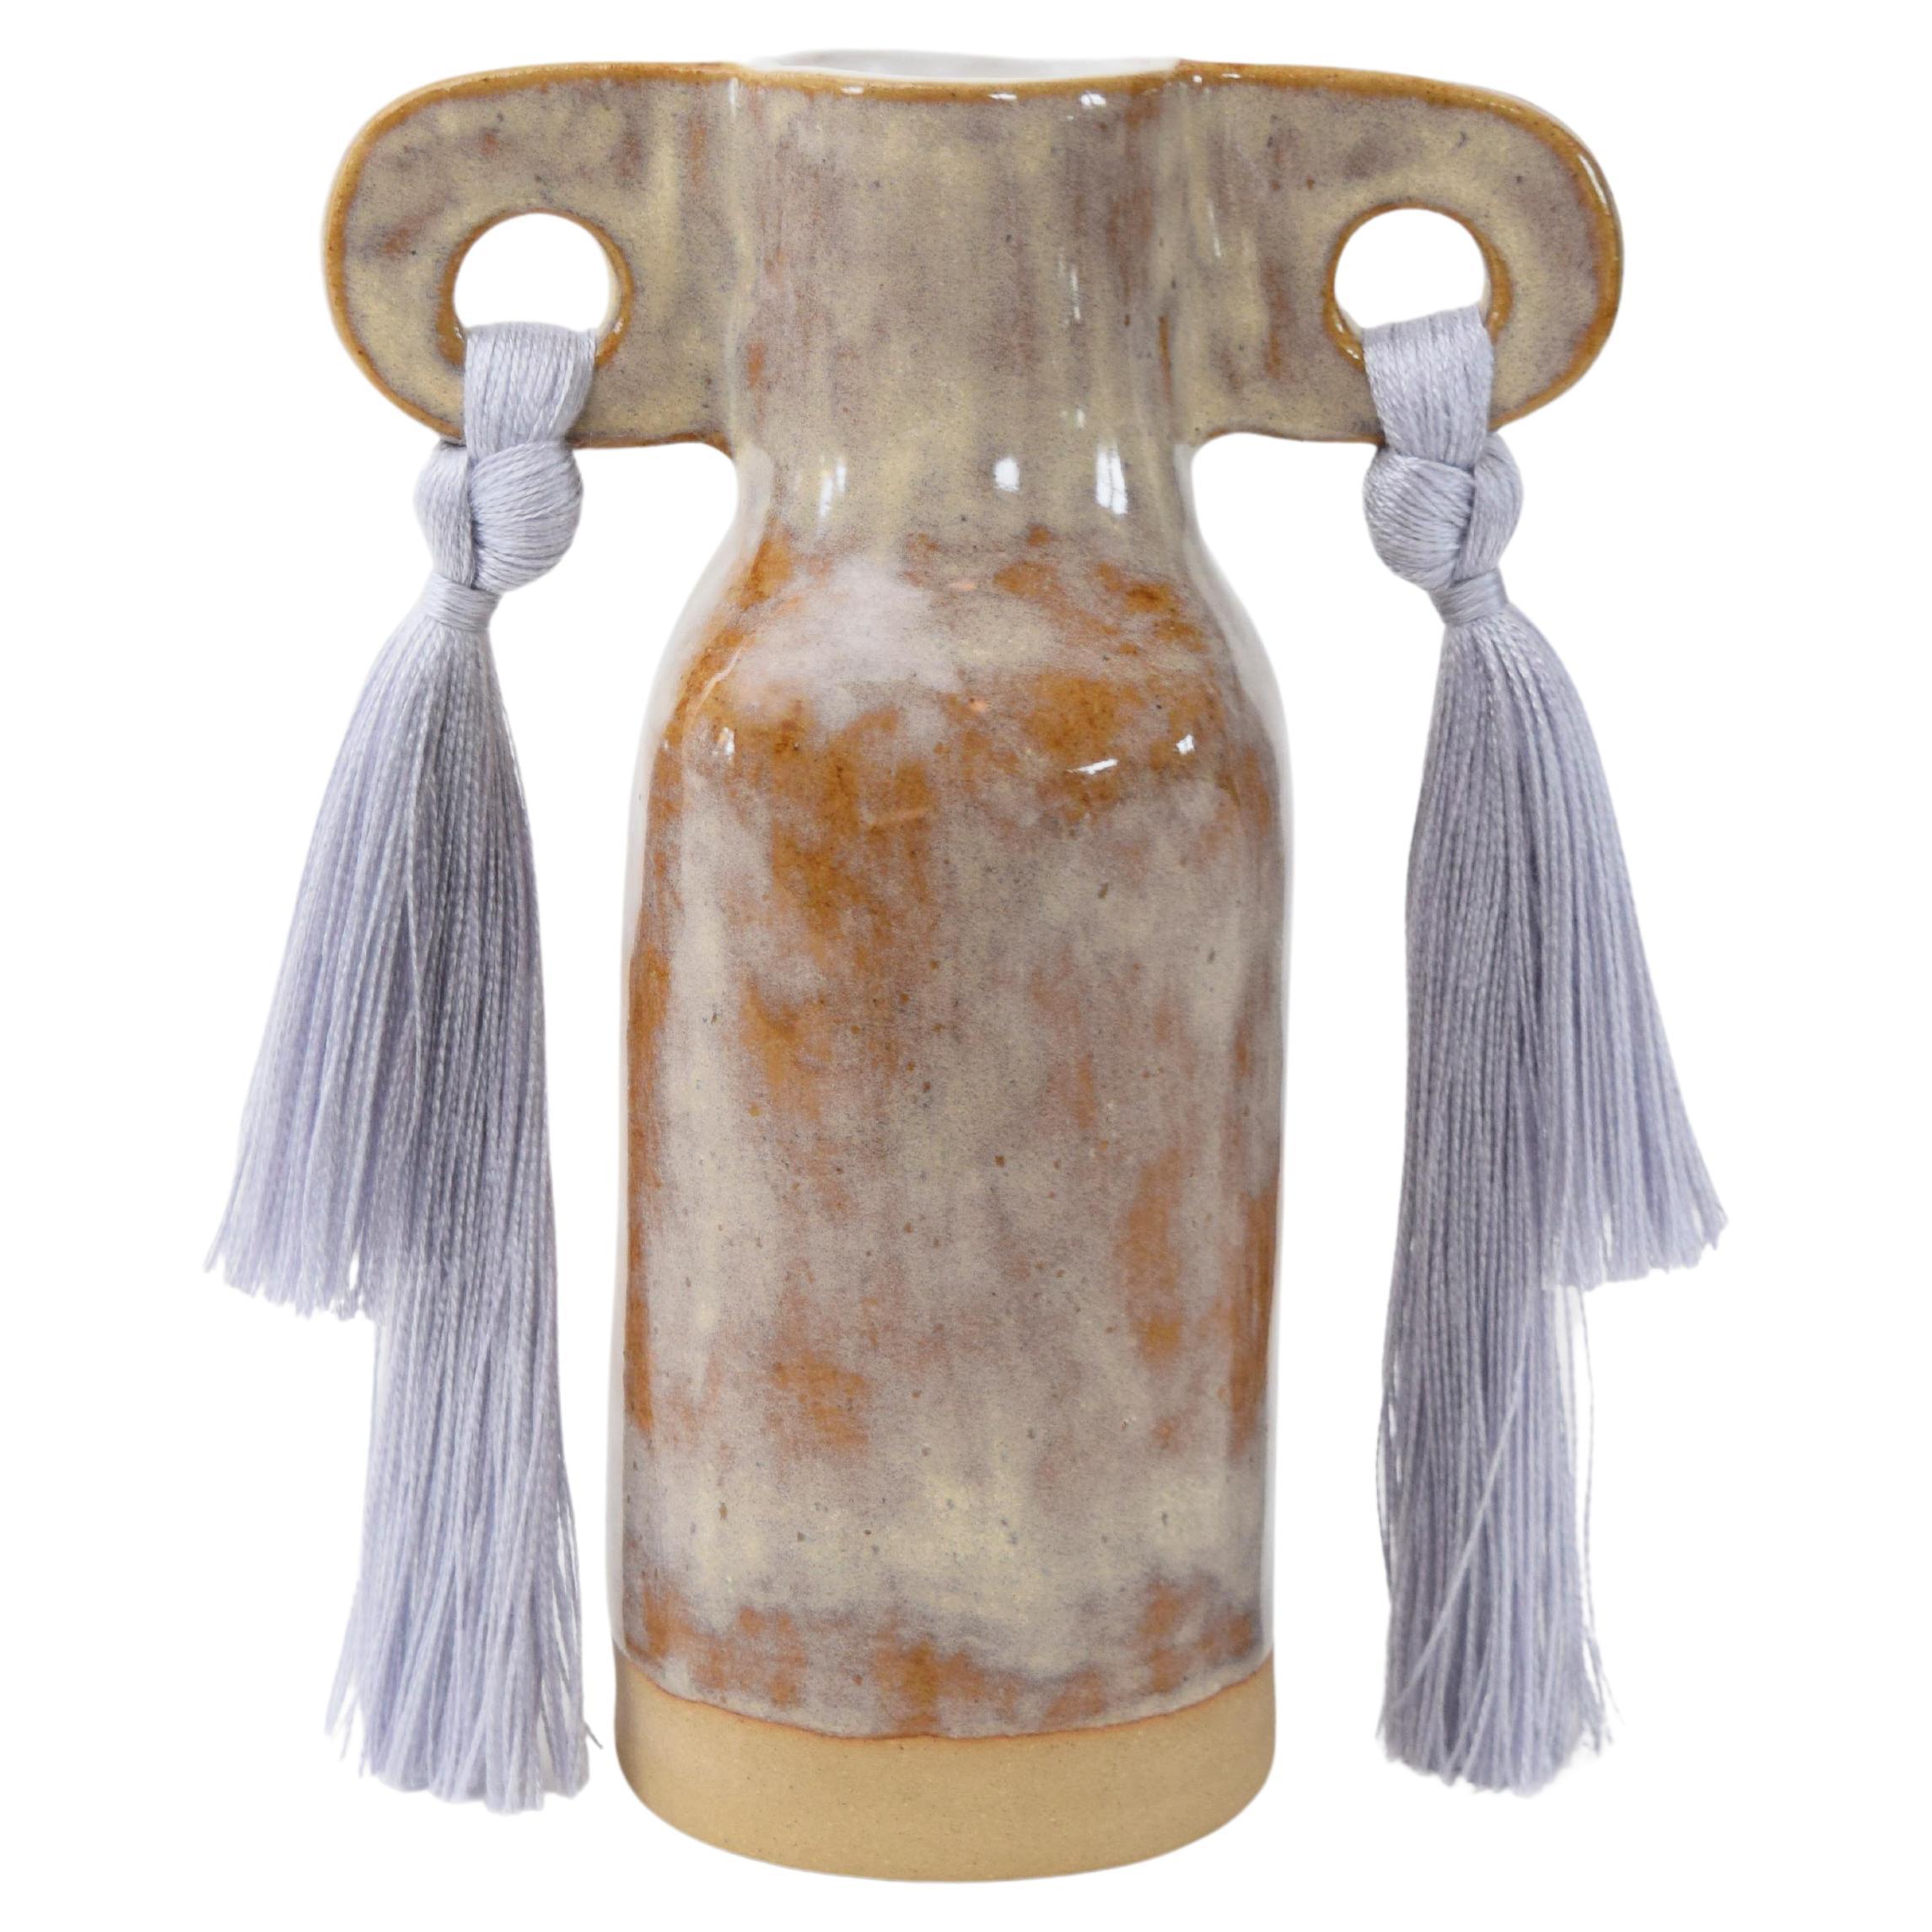 Jarrón de cerámica hecho a mano nº 606 en esmalte gris con detalles de flecos de tencel